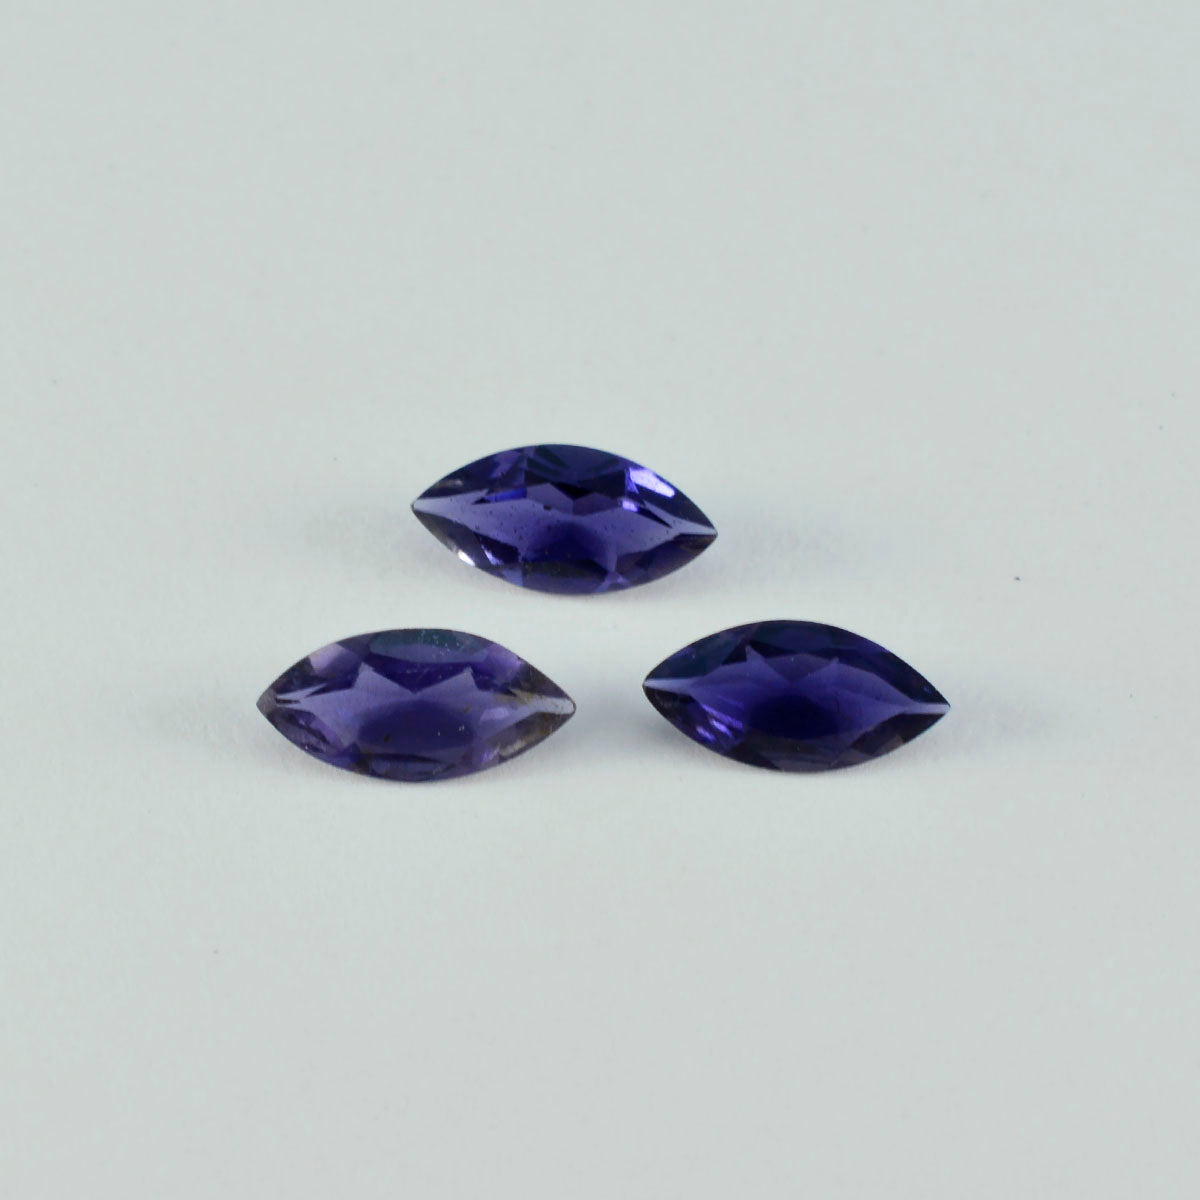 Riyogems 1 pièce d'iolite bleue à facettes 9x18mm en forme de marquise, pierres précieuses en vrac de qualité douce